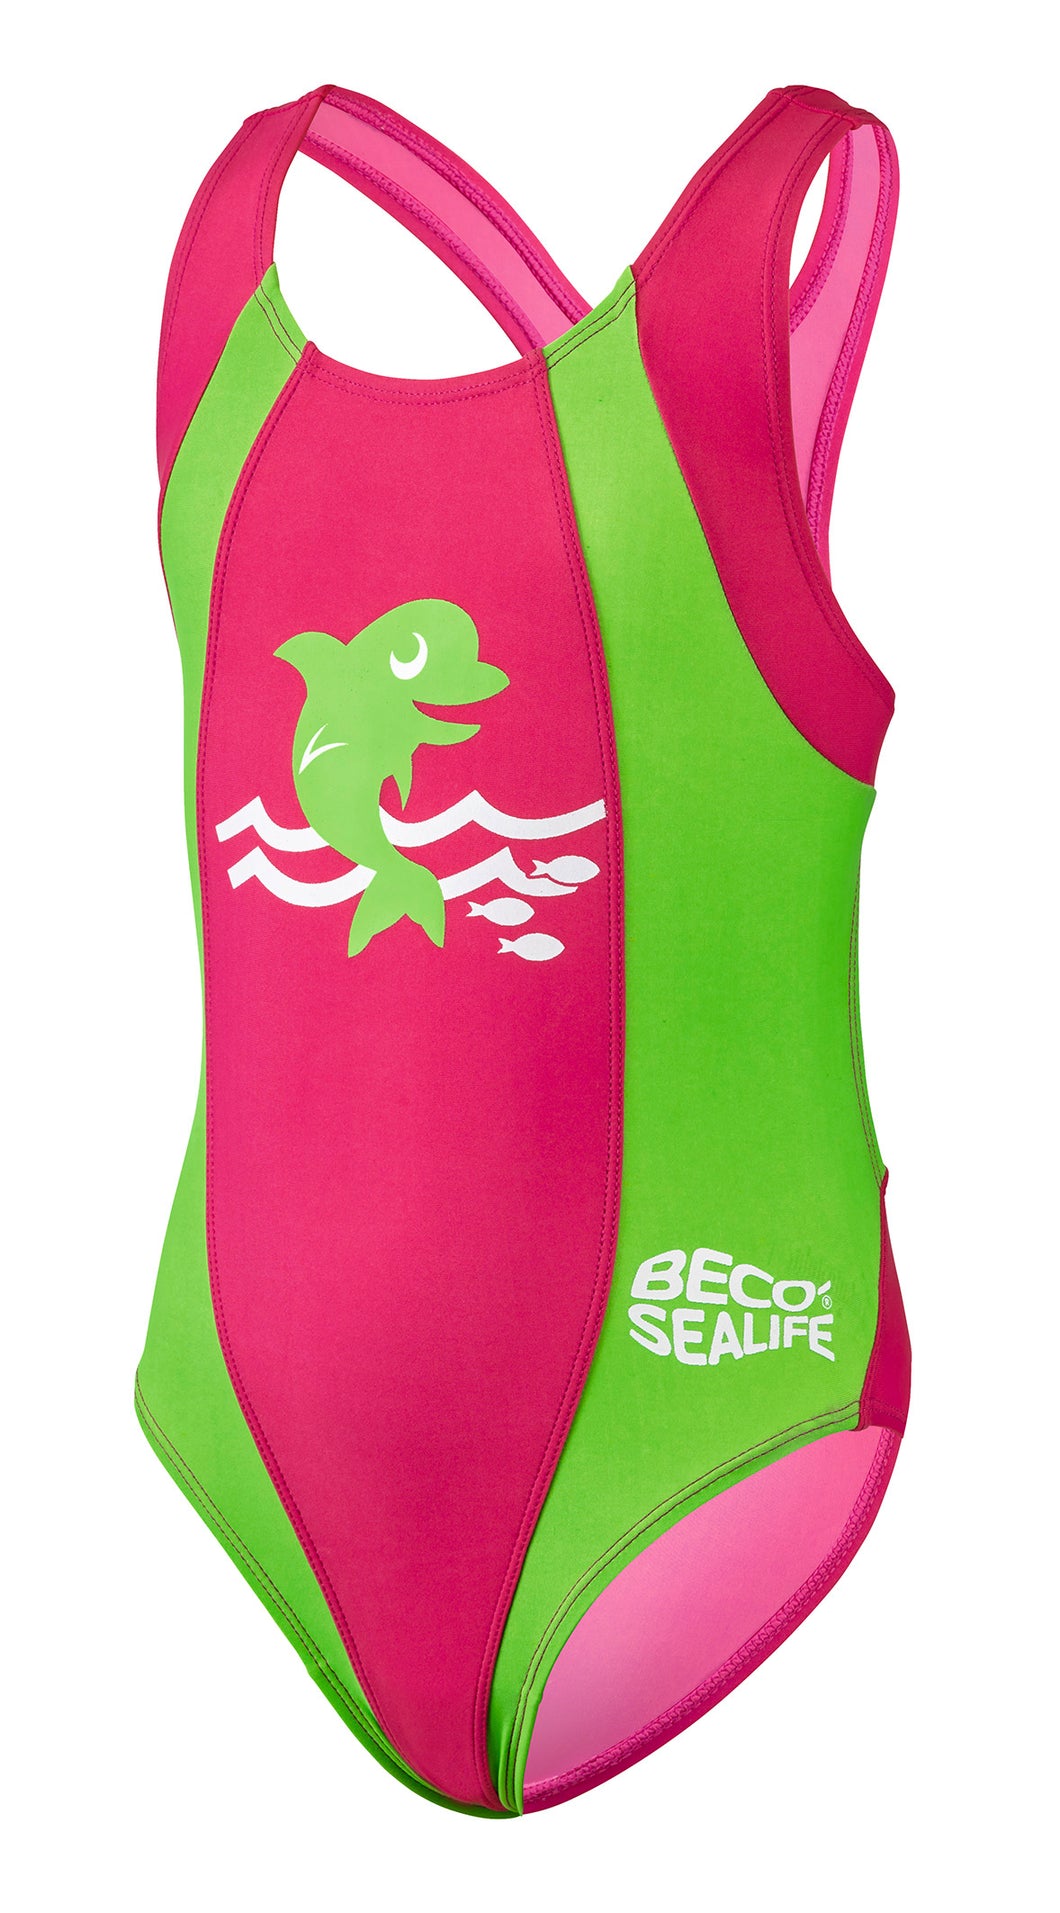 BECO SEALIFE Mädchen Kinder Badeanzug Schwimmanzug Einteiler Größe 80-128 UV50+